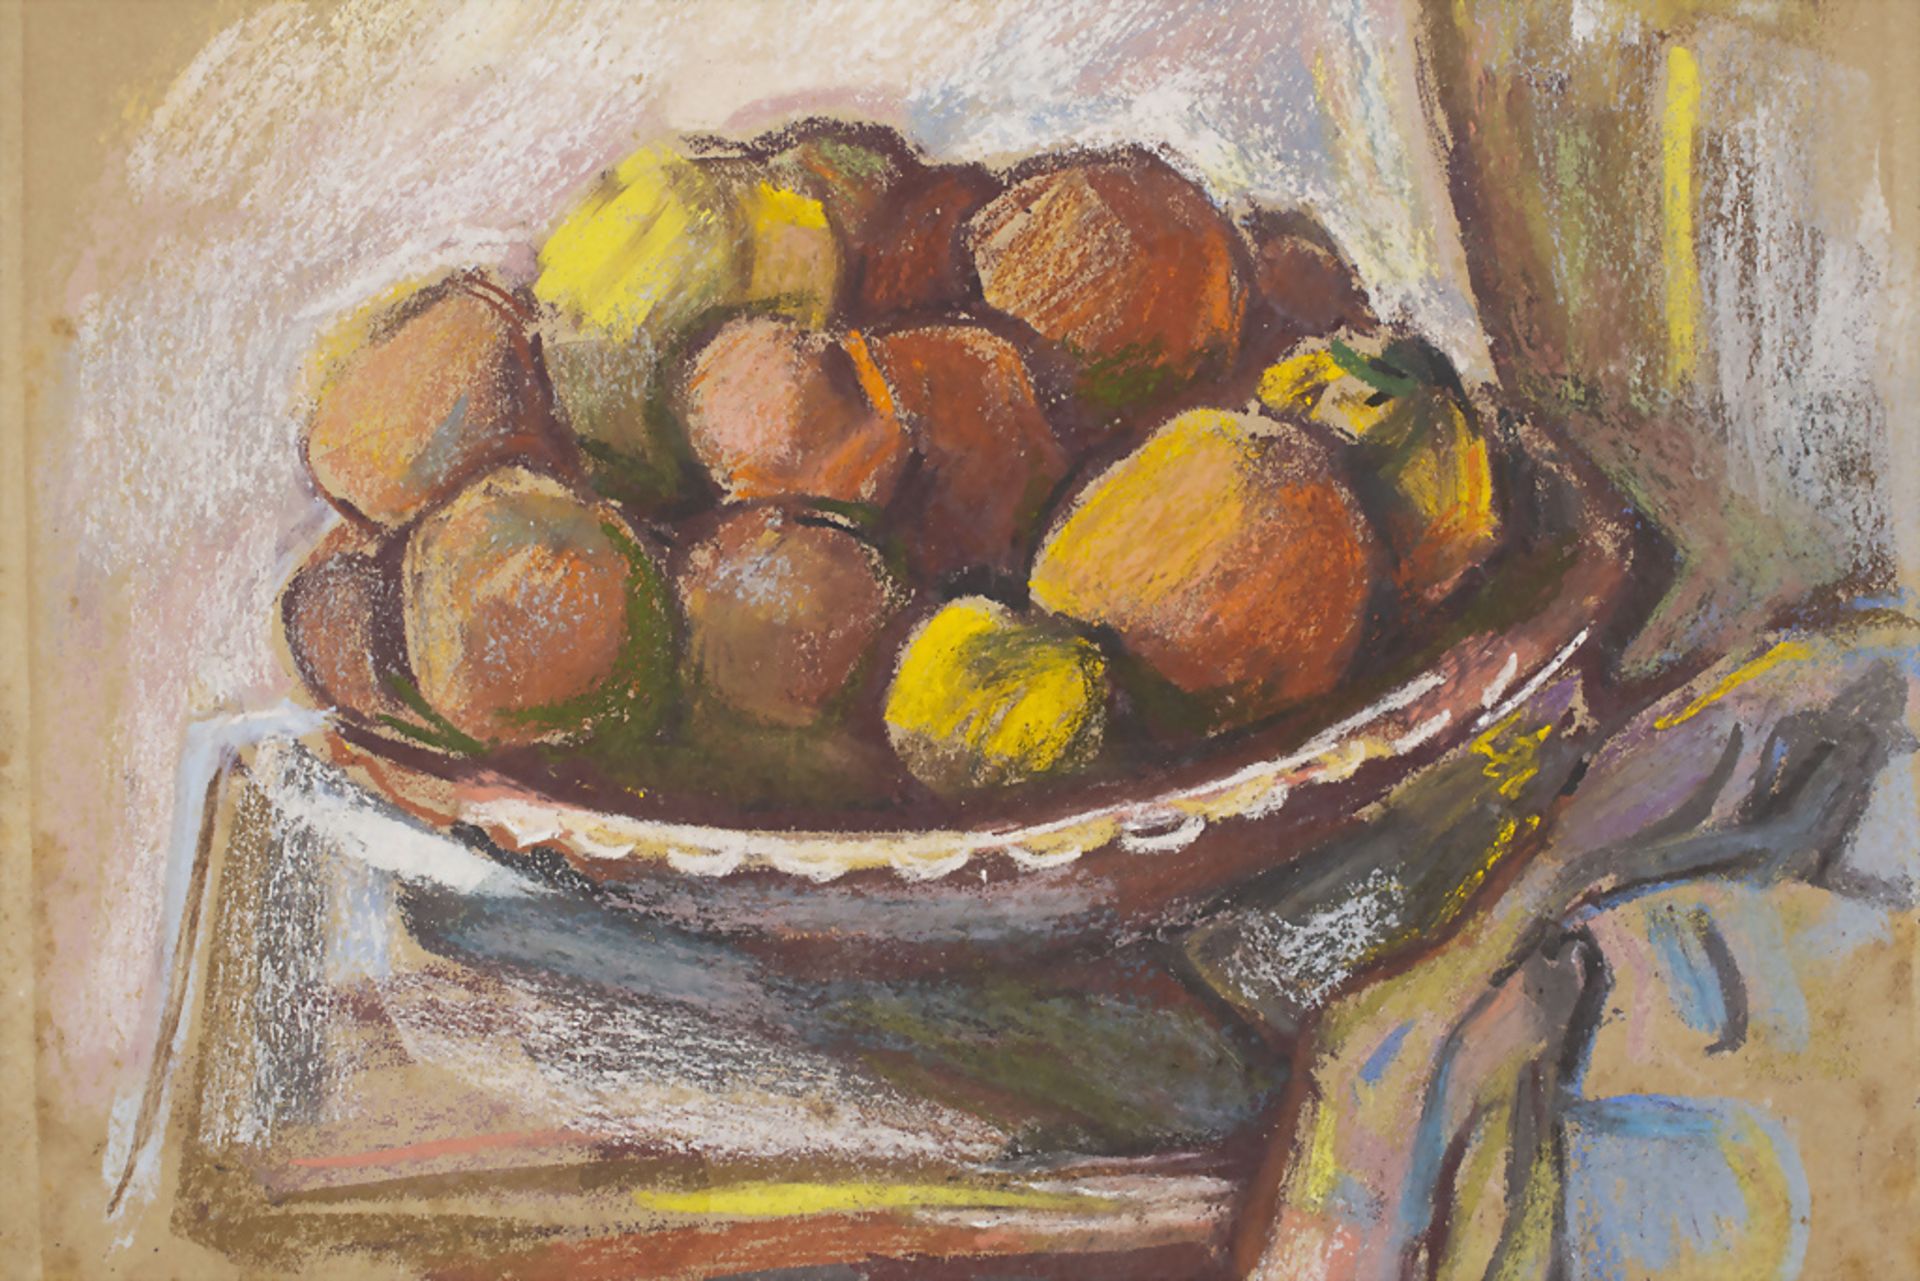 Richard ZIEGLER (1891-1992), Stillleben 'Fruchtschale' / Still life 'fruit basket', 1970 - Image 2 of 6